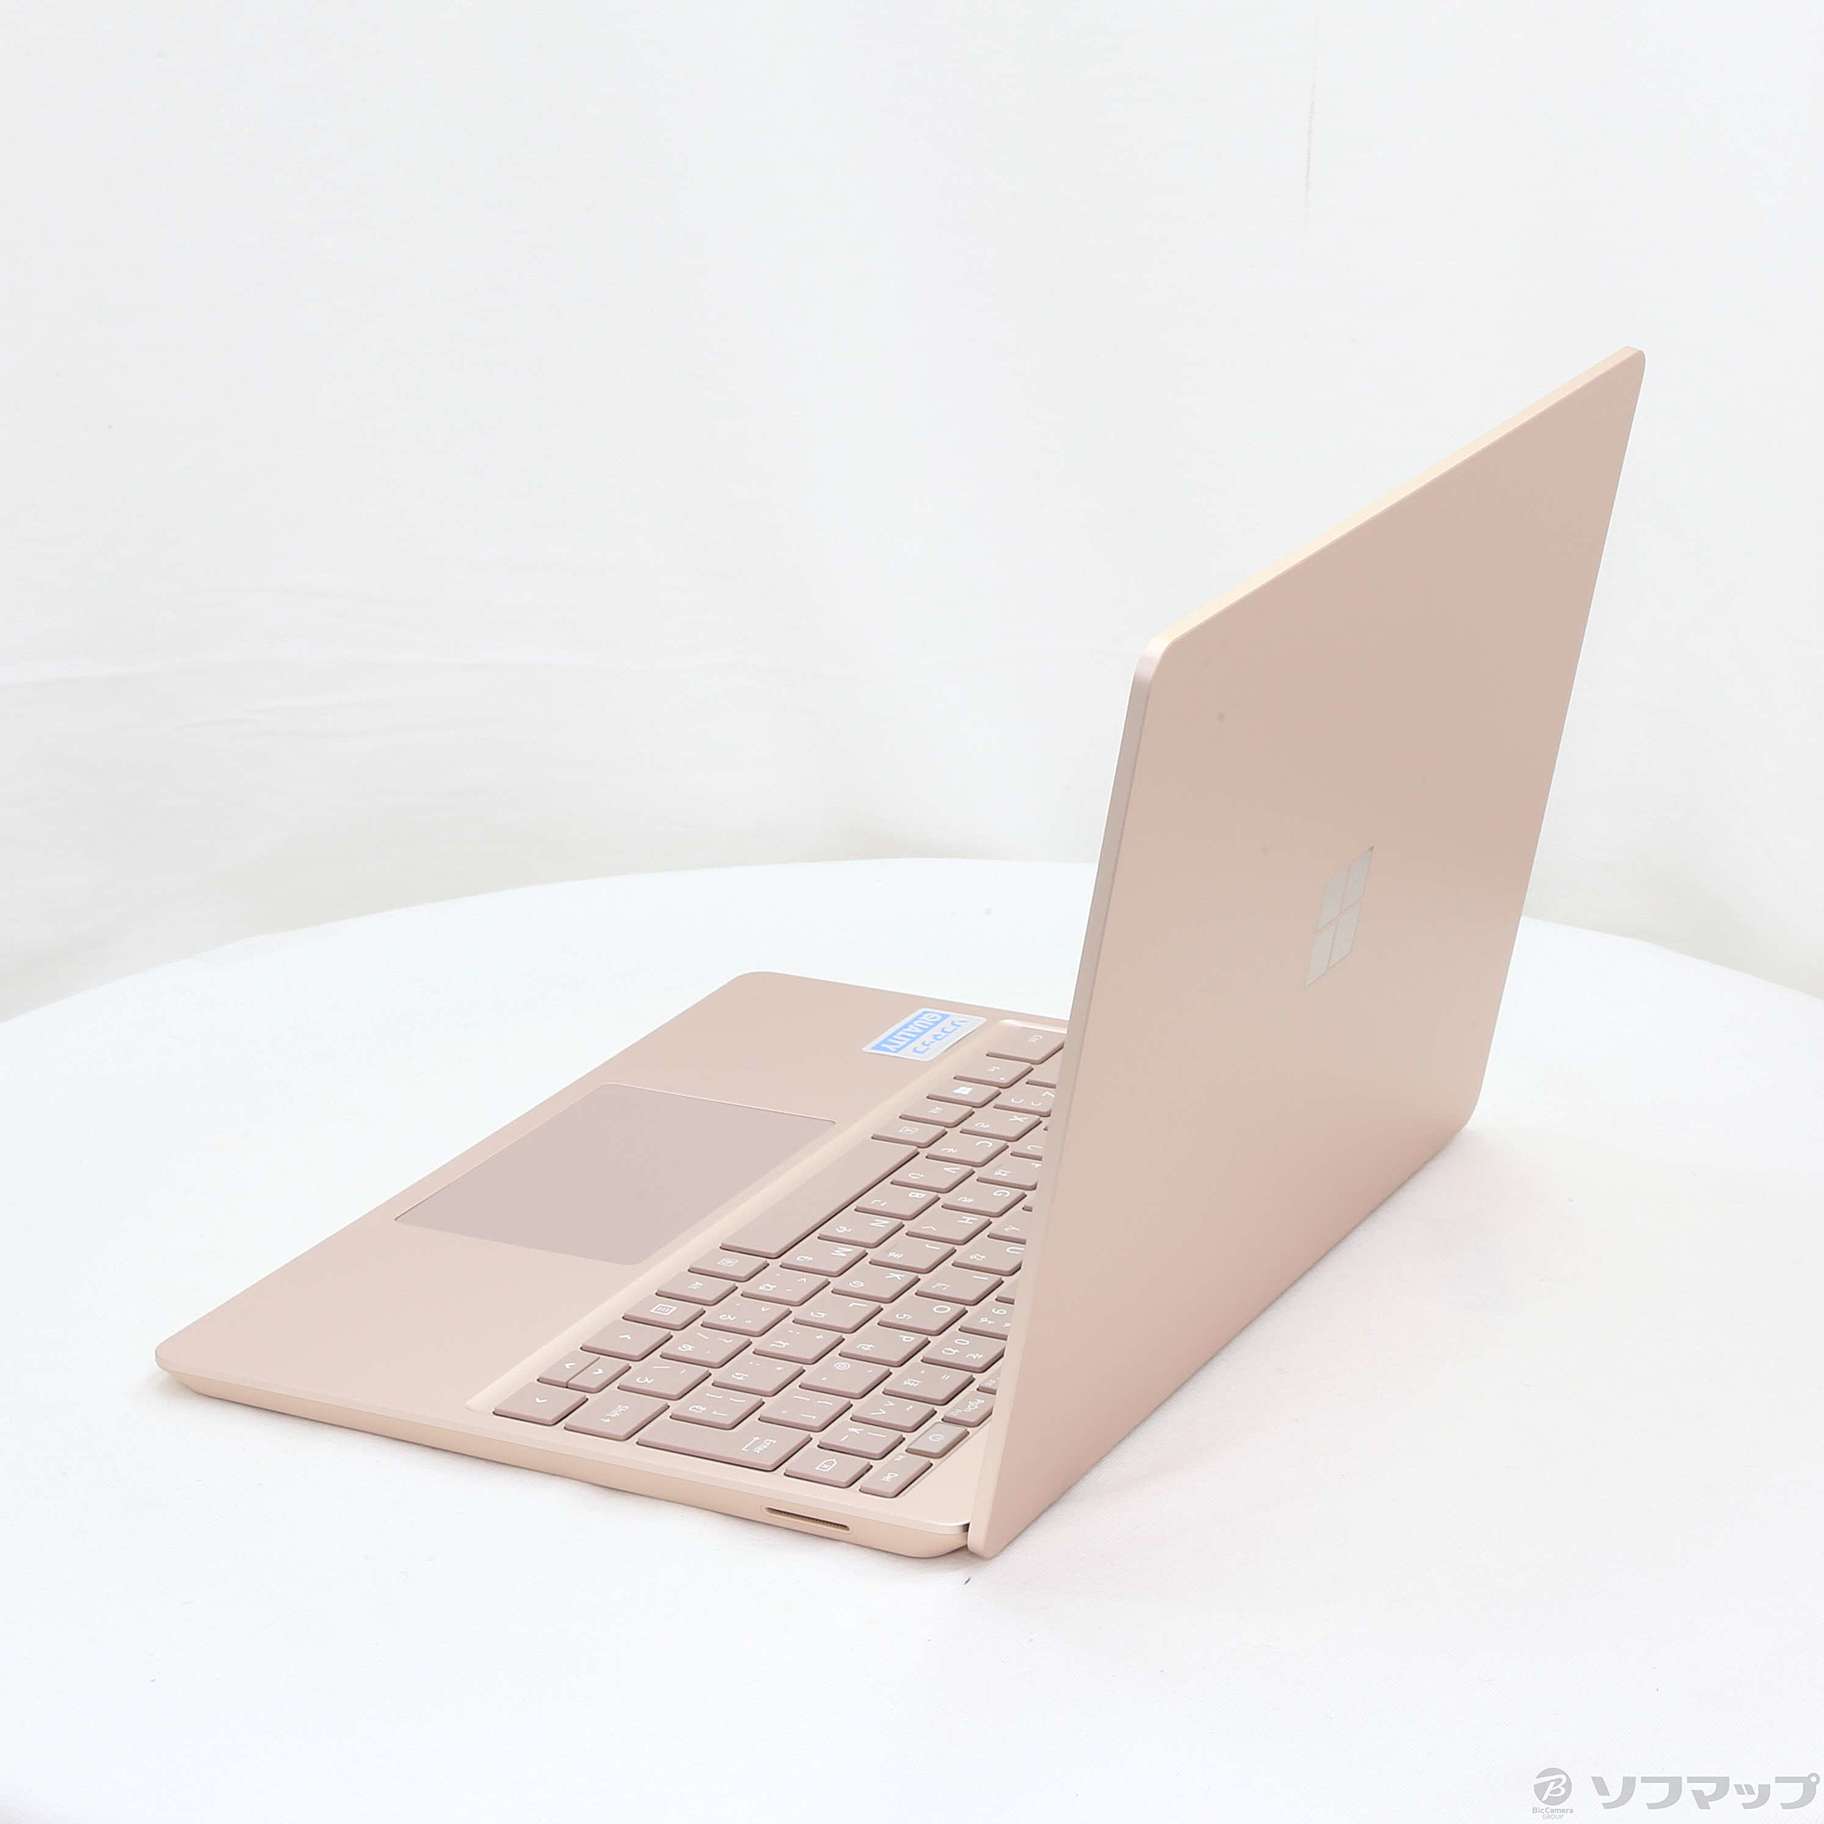 【新品未開封】THJ-00045 Surface Laptop Go